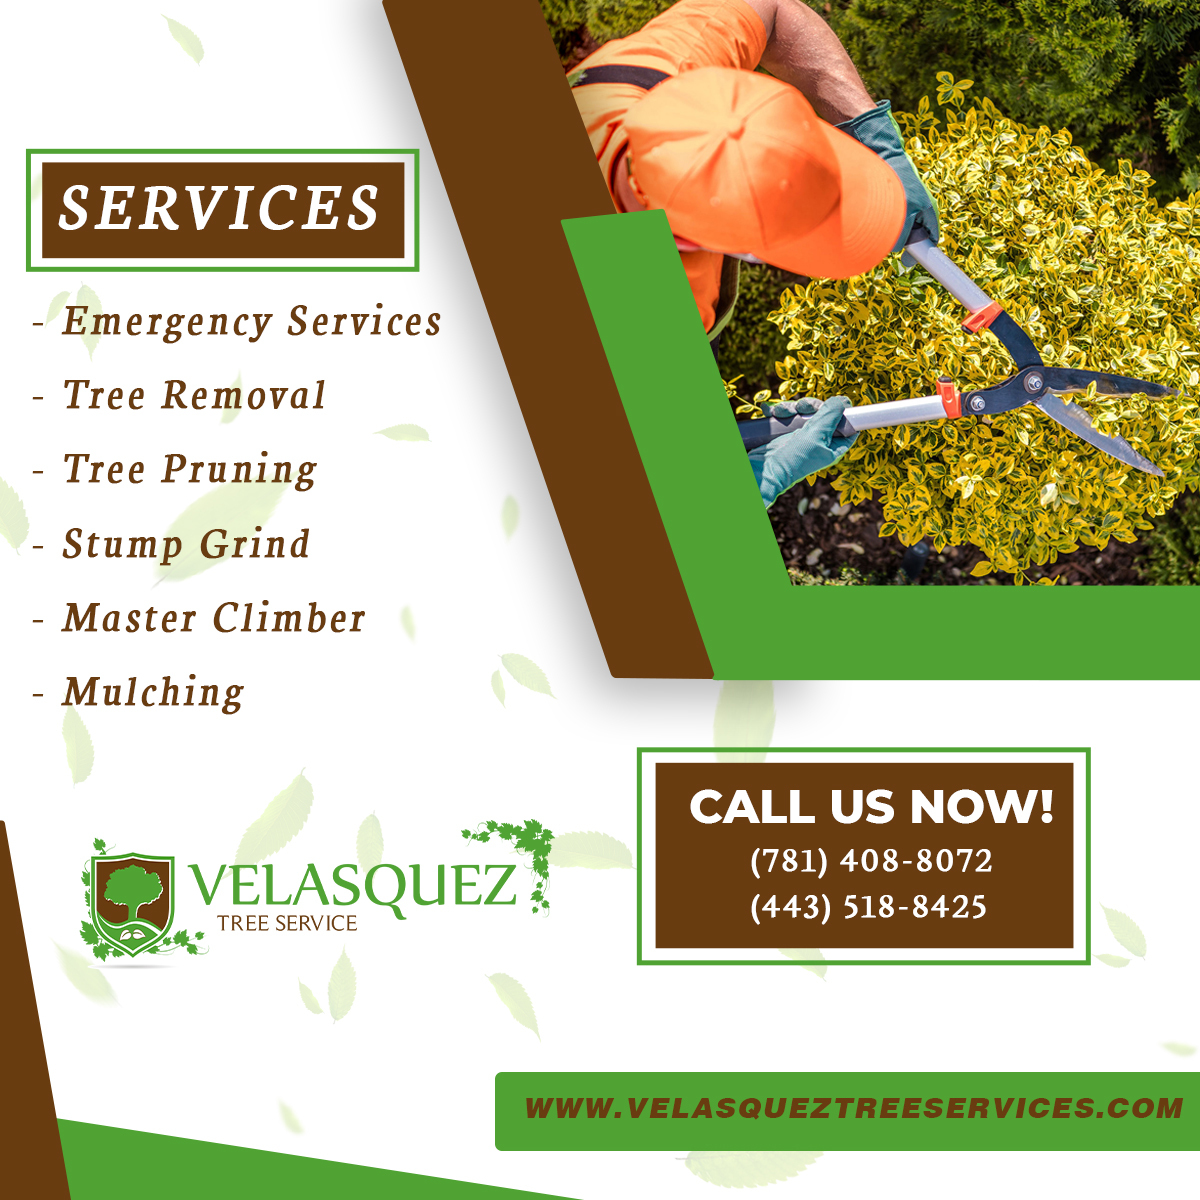 Velasquez Tree Service